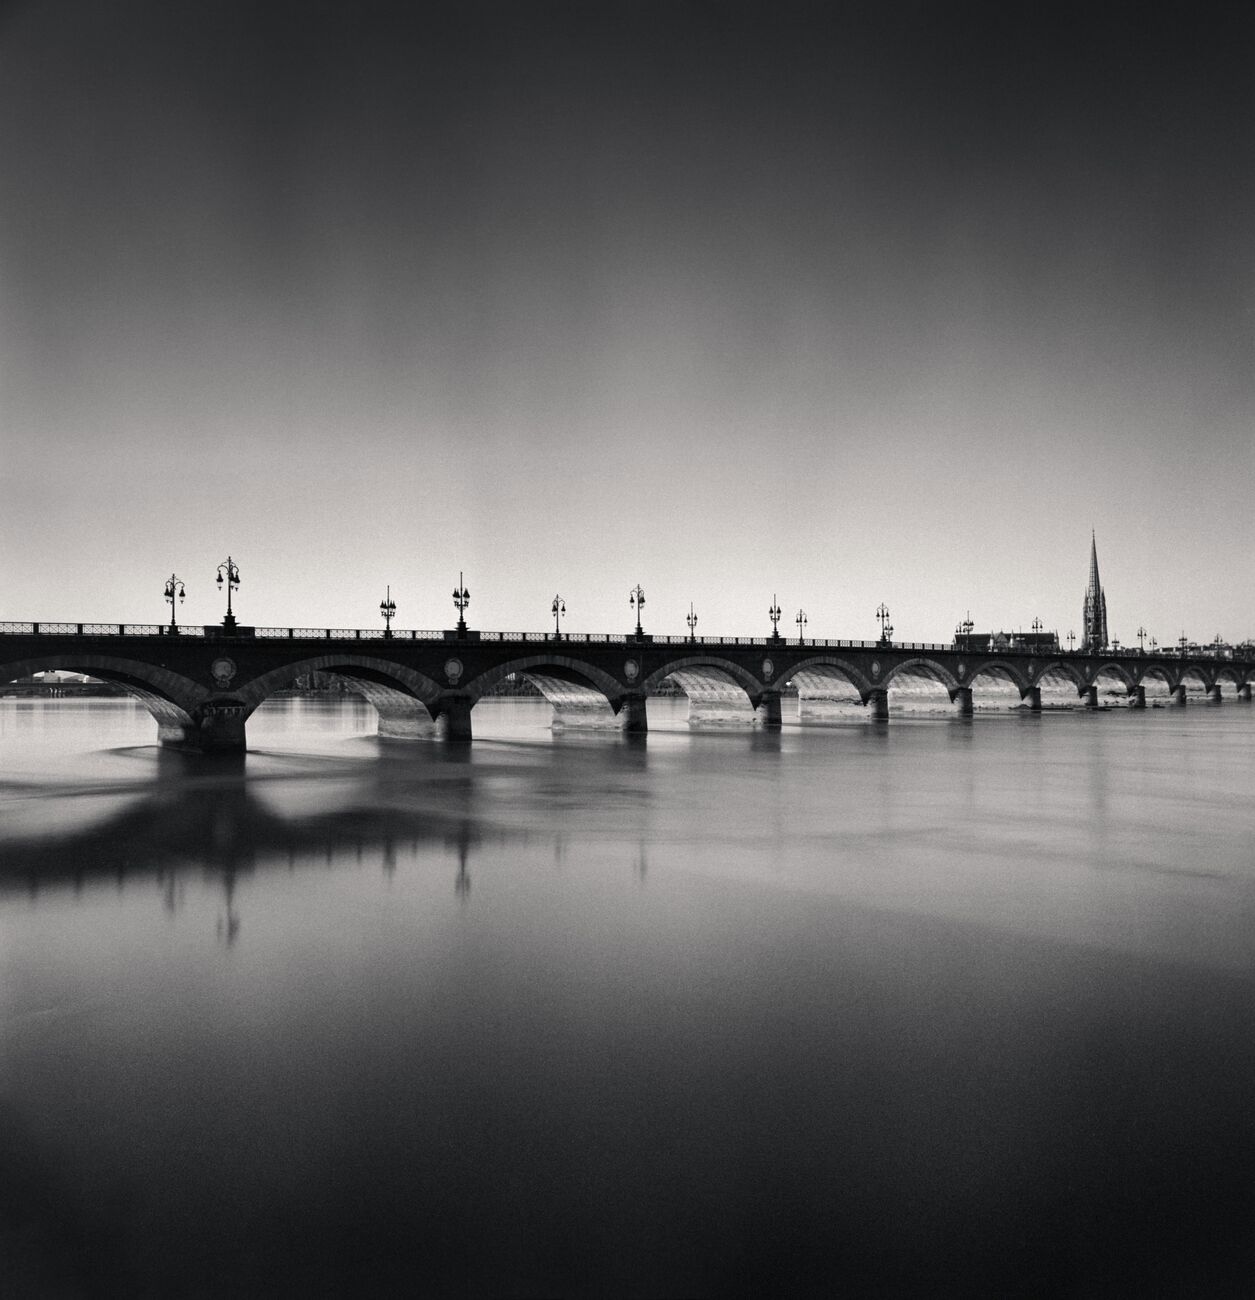 Pont De Pierre Bridge And St. Michael Basilica Tower, Bordeaux, France. September 2020. Ref-1365 - Denis Olivier Photography